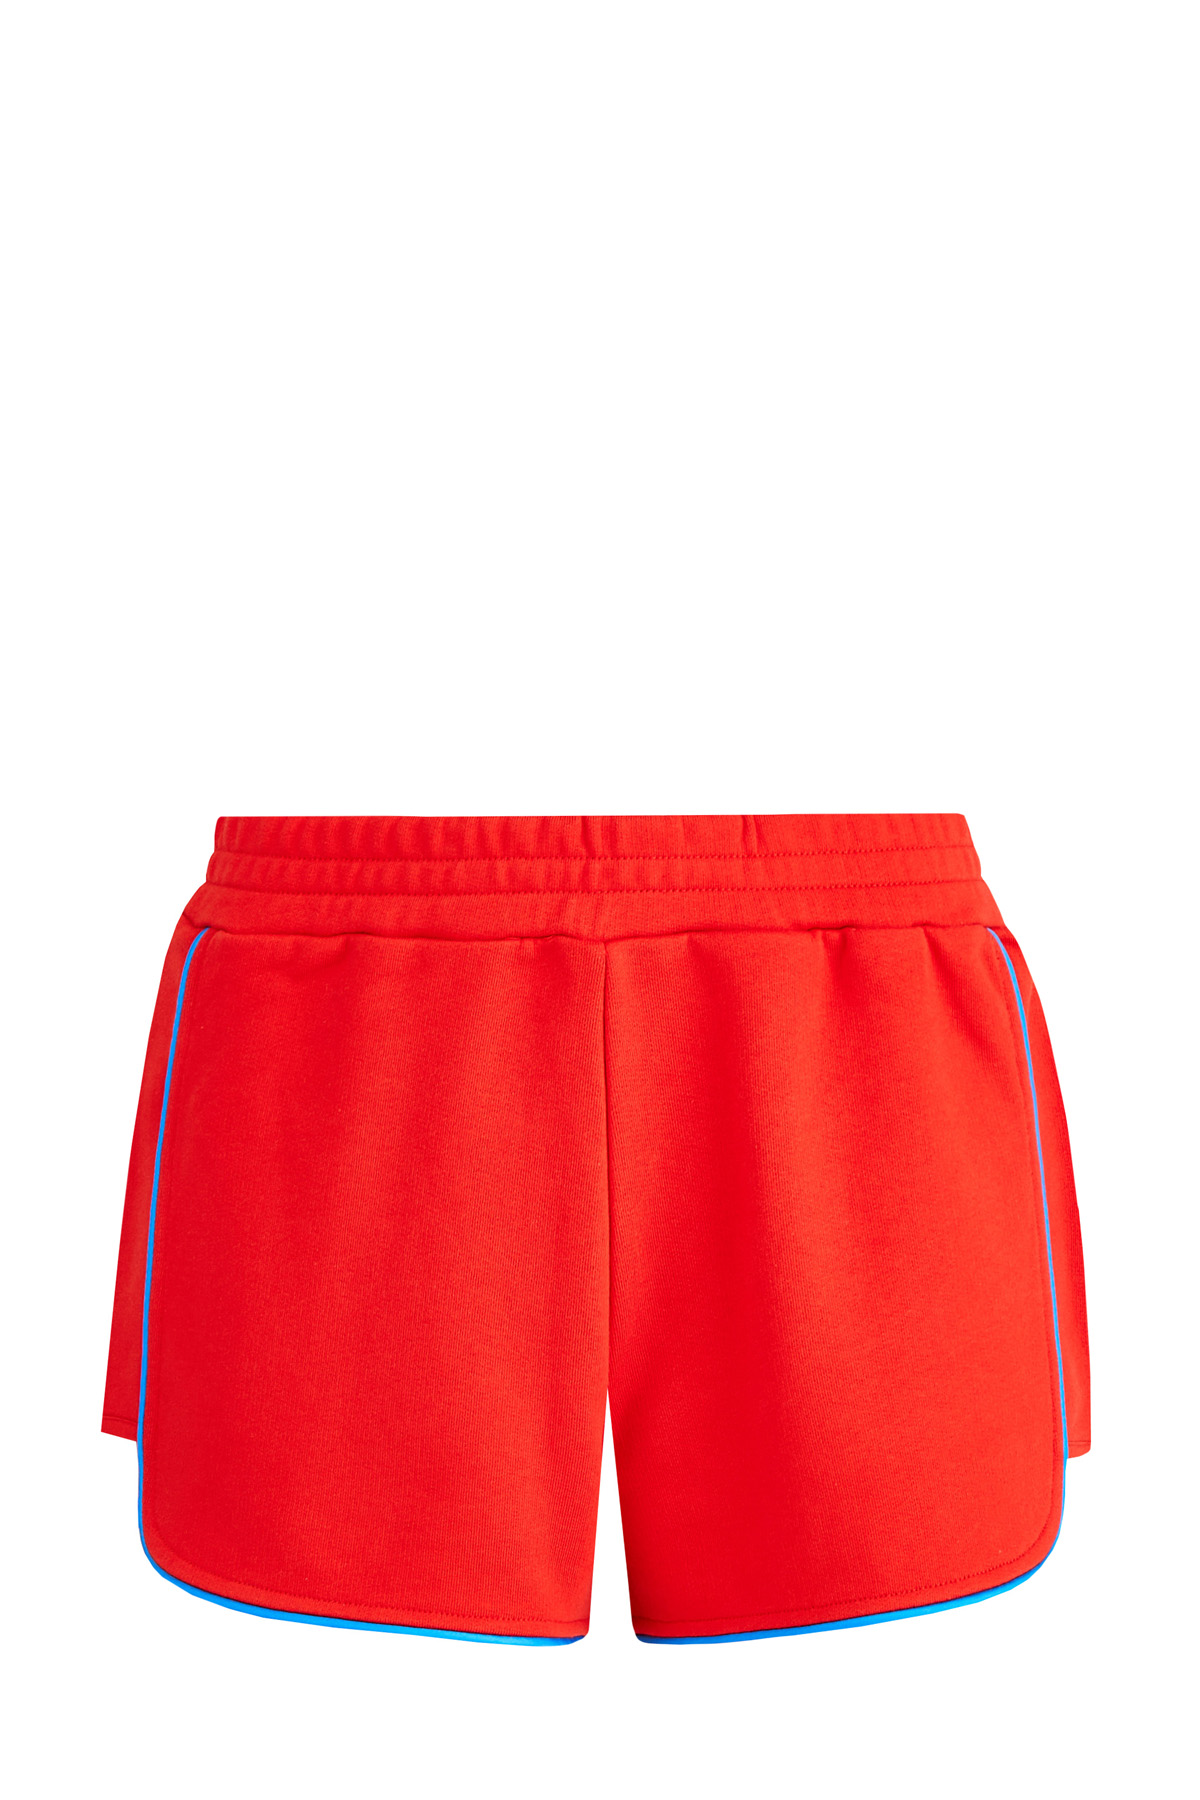 Яркие шорты из хлопка с отделкой тесьмой и монограммой на спинке KENZO, цвет красный, размер S;L;XL